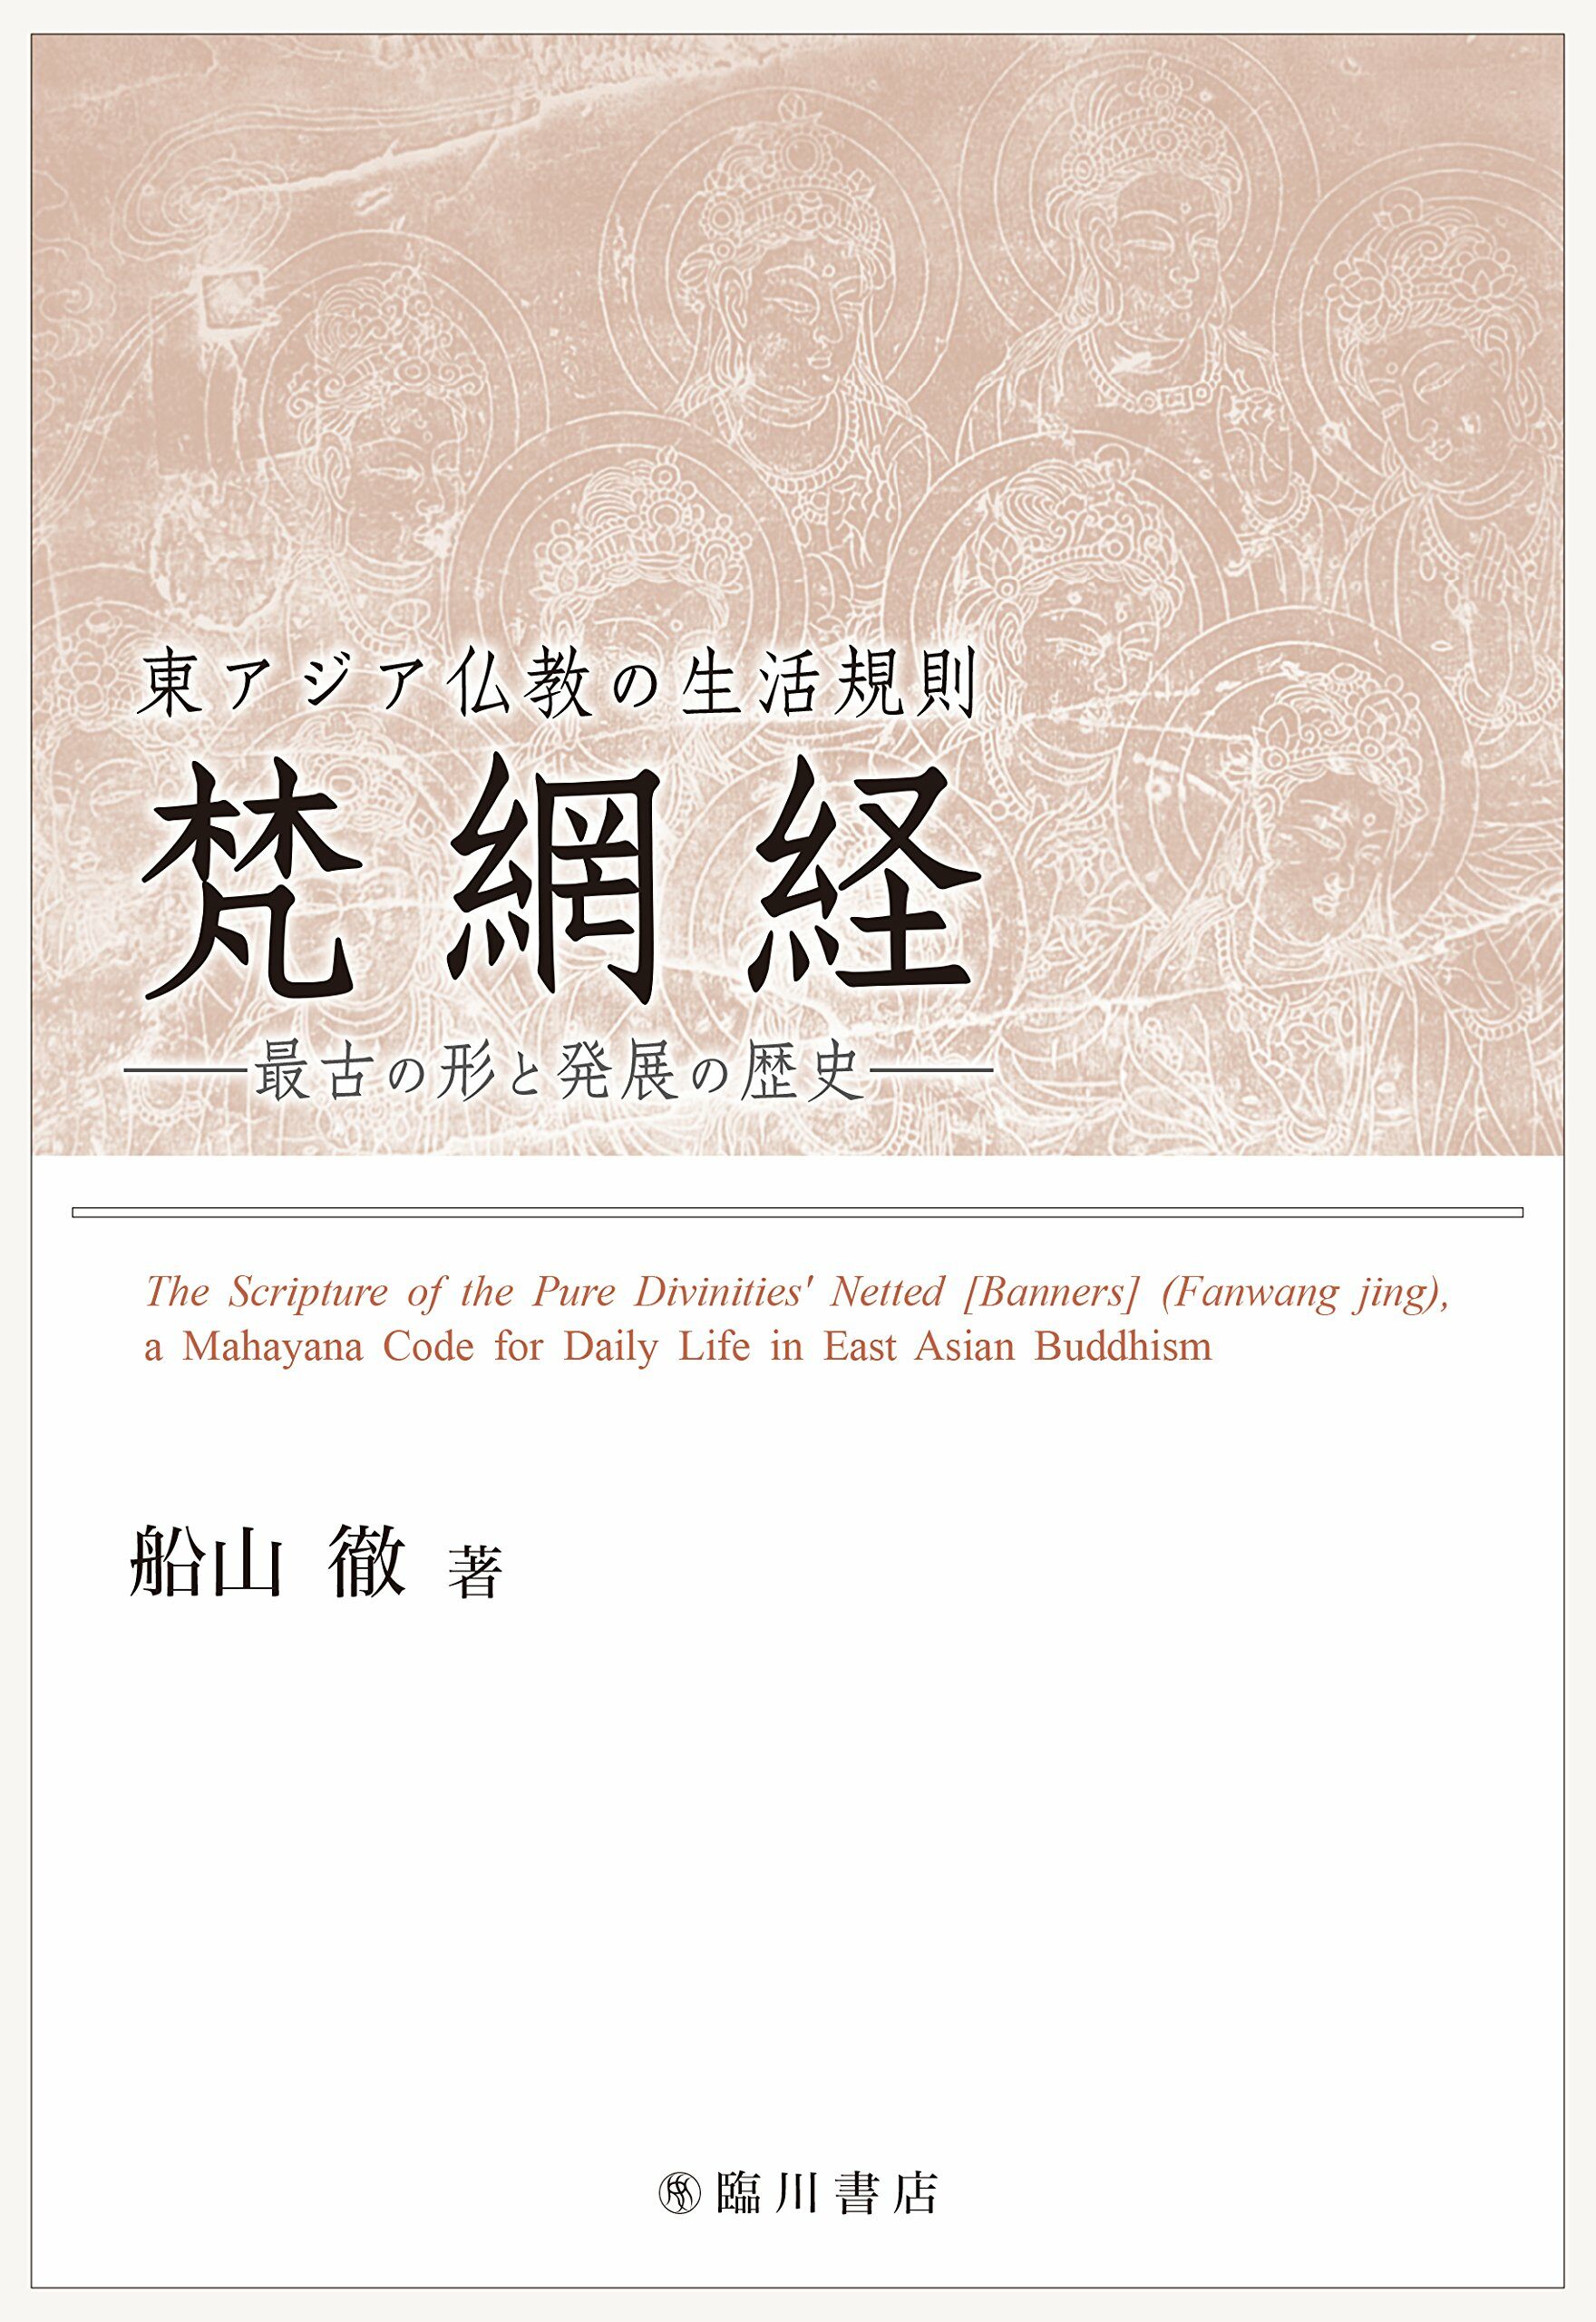 東アジア佛敎の生活規則 梵網經 最古の形と發展の歷史